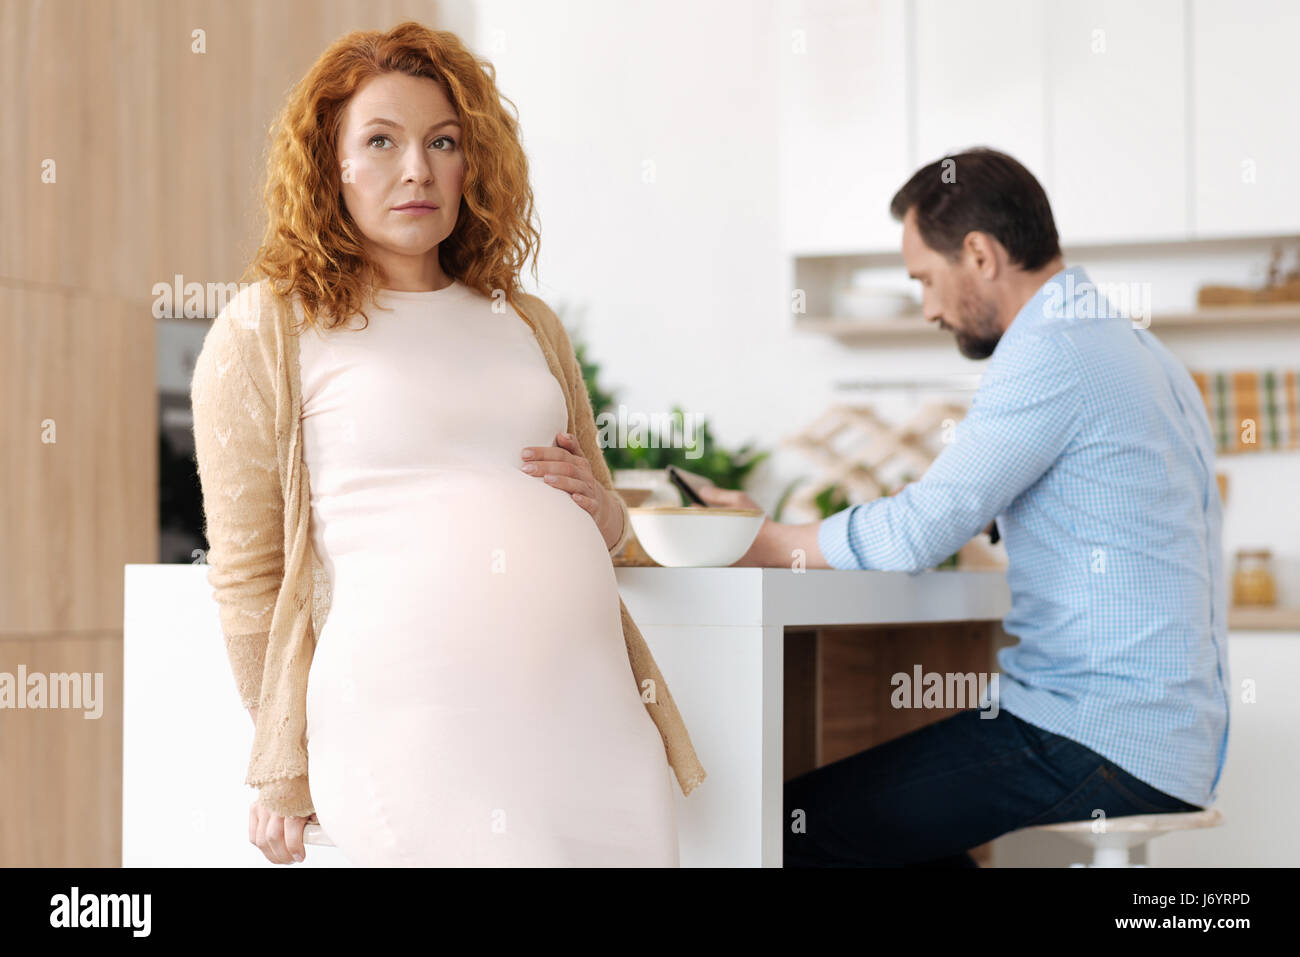 Belle femme enceinte à terme des questions réflexion Banque D'Images